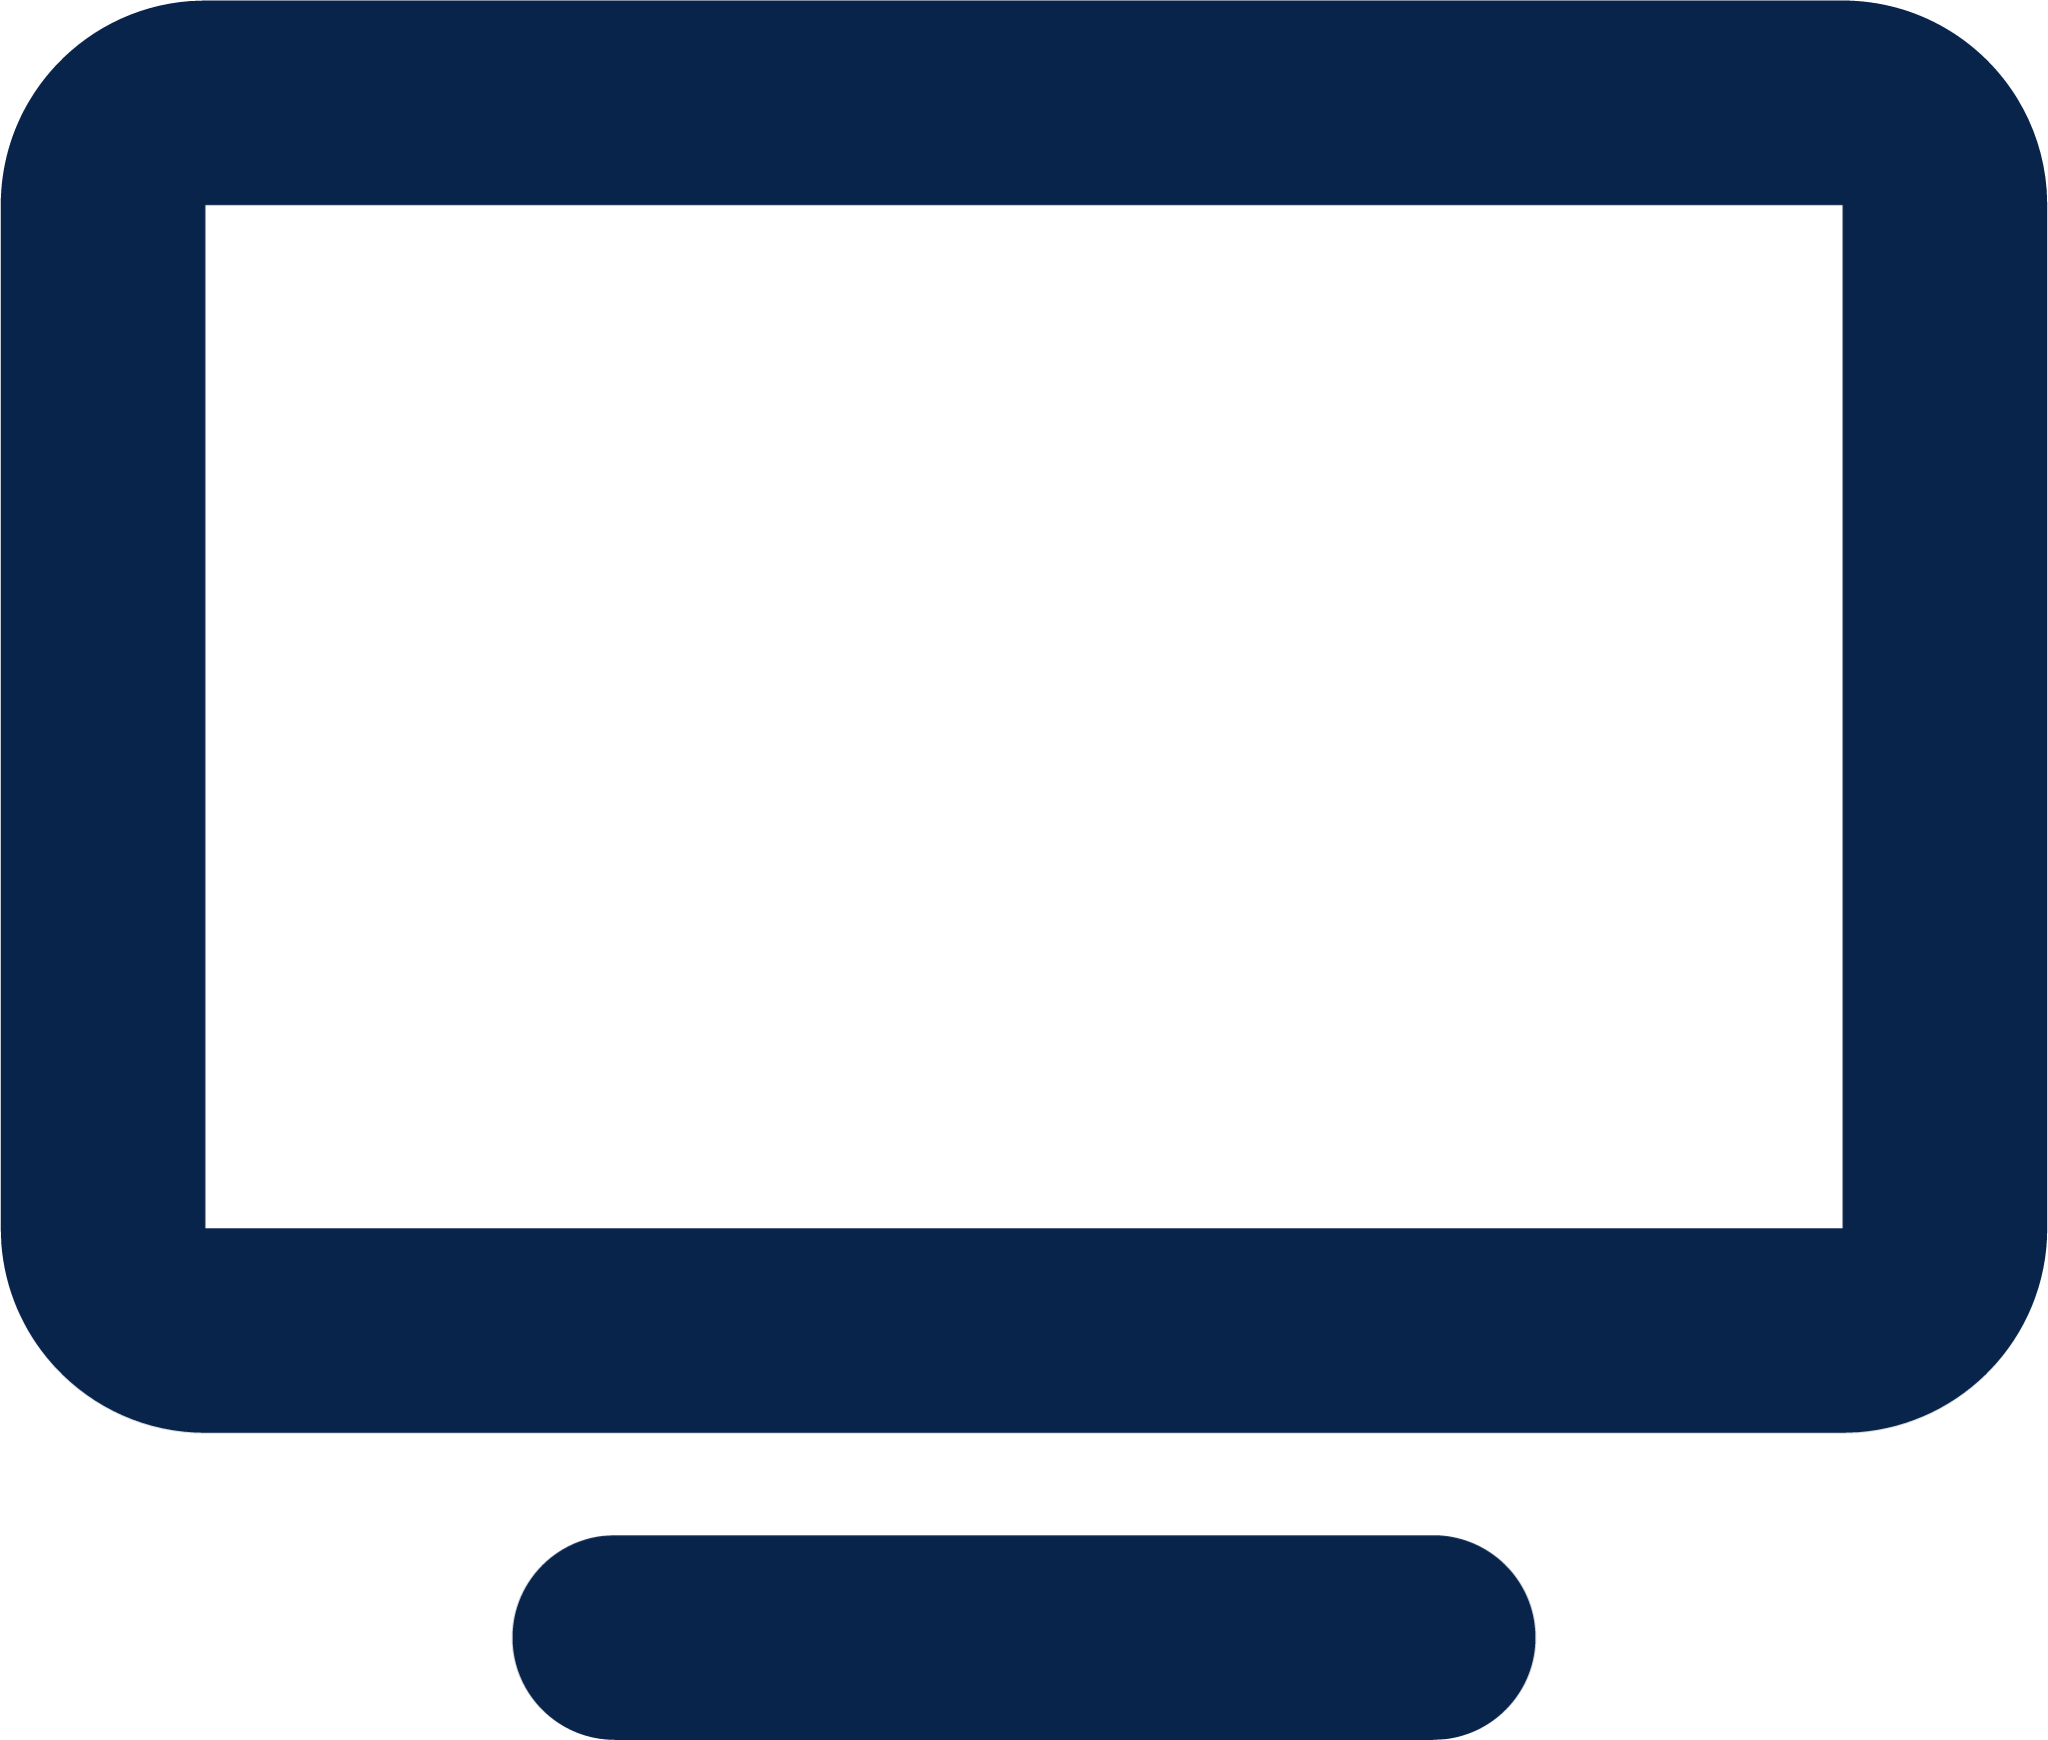 tv 1 line device icon